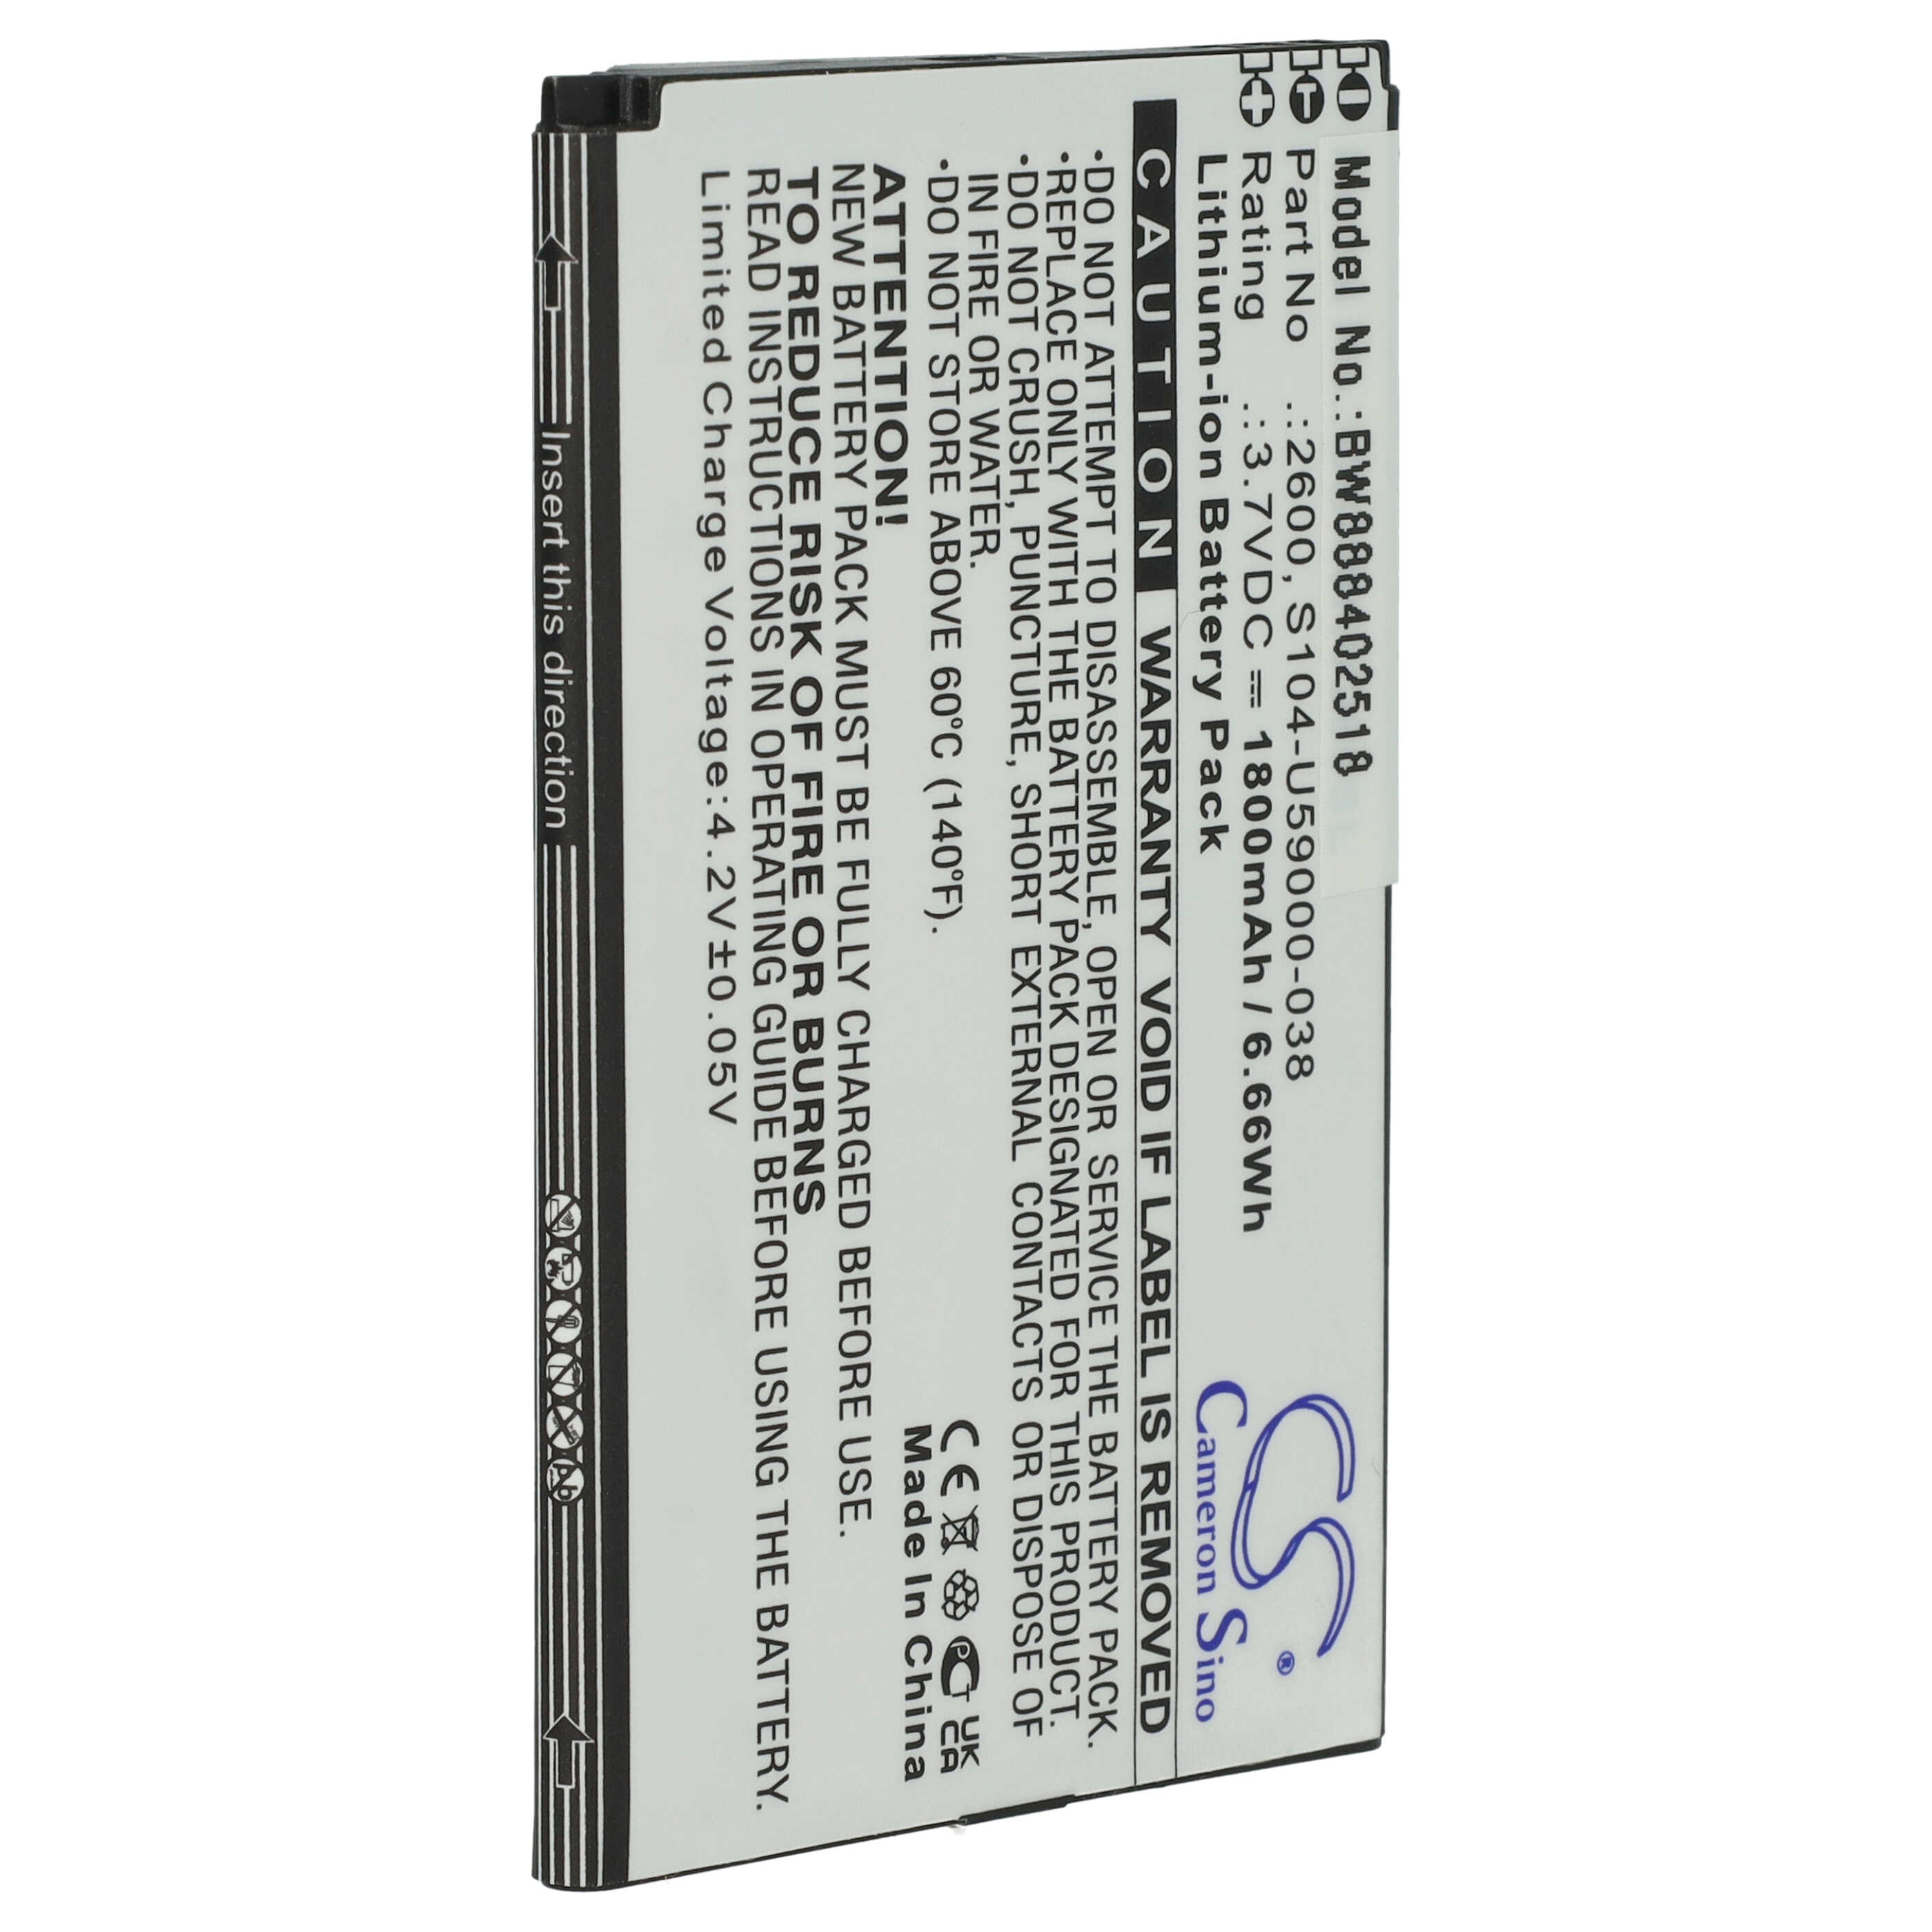 Batterie remplace Wiko 2600, S104-U59000-038 pour téléphone portable - 1800mAh, 3,7V, Li-ion